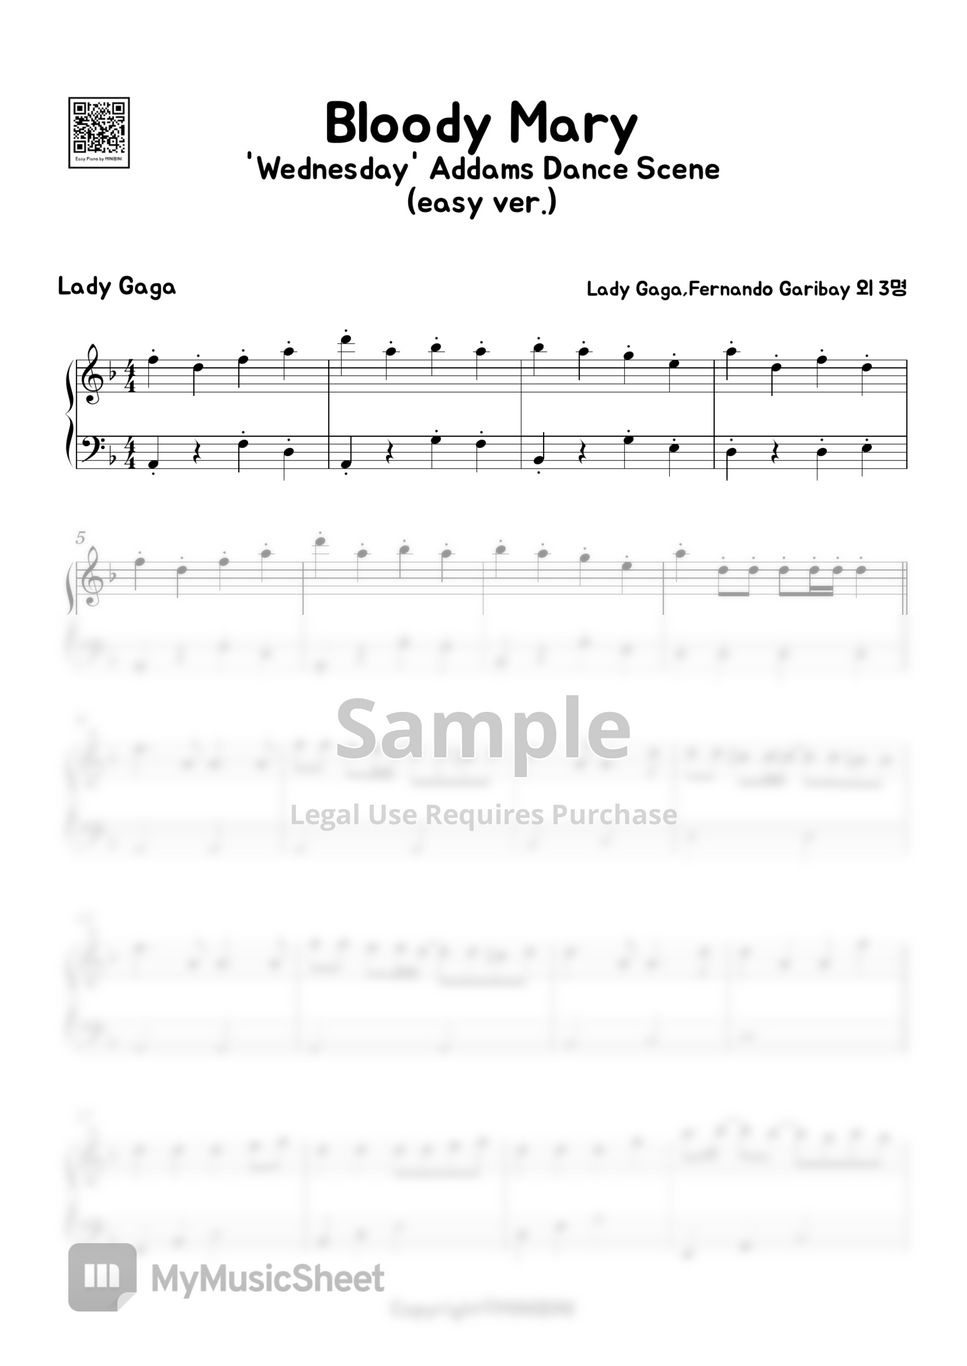 Lady Gaga - Bloody Mary (Easy Version) by MINIBINI